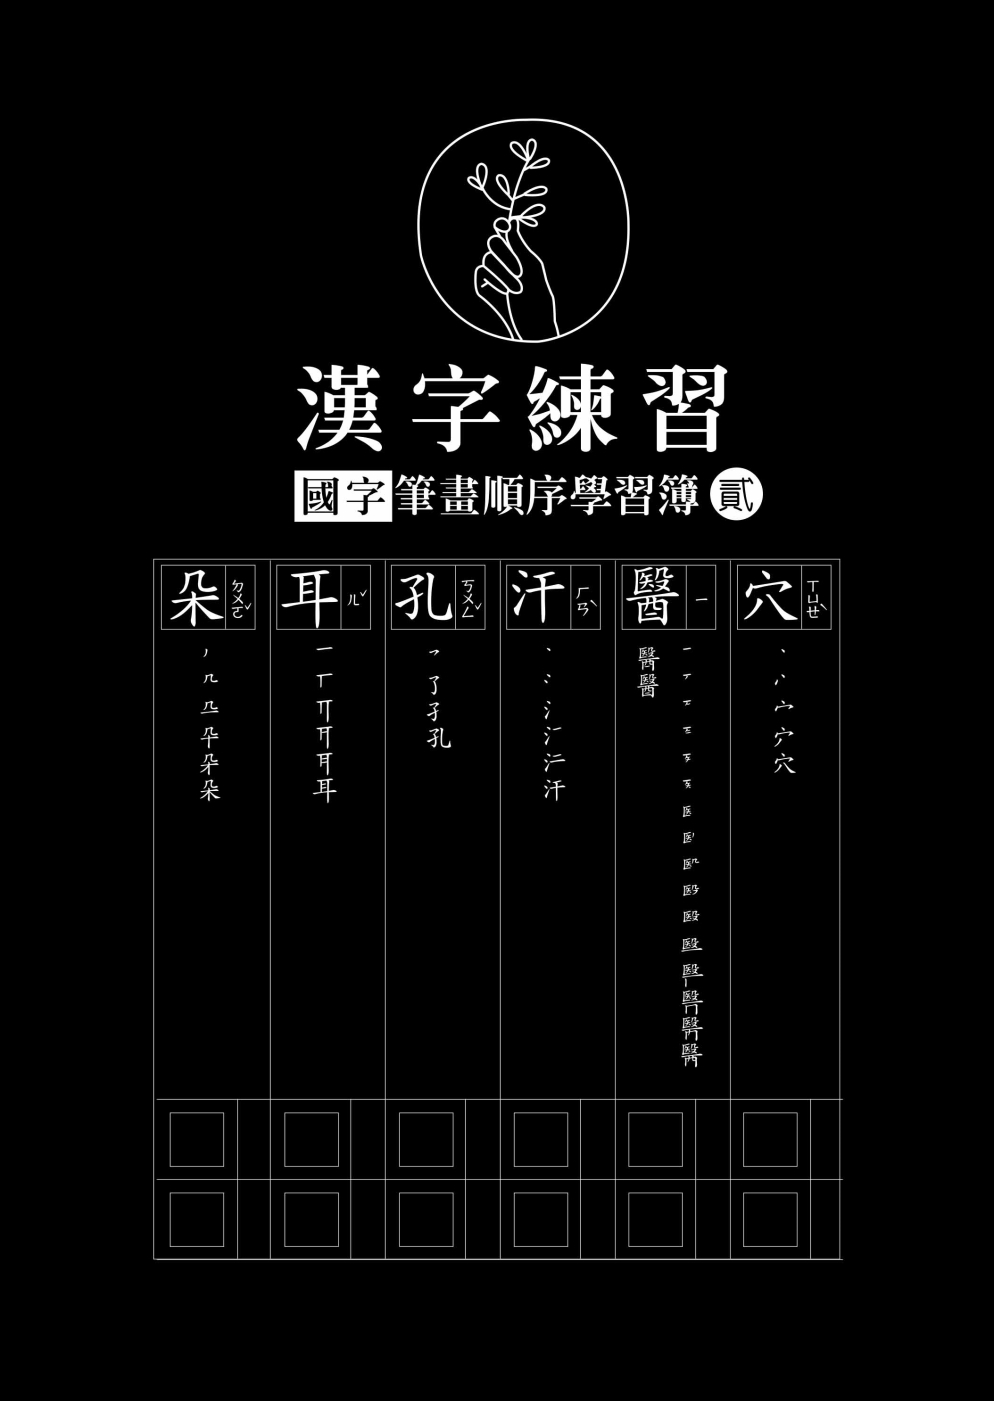 漢字練習國字筆畫順序練習簿 (貳)（鋼筆練習本/一套四冊)